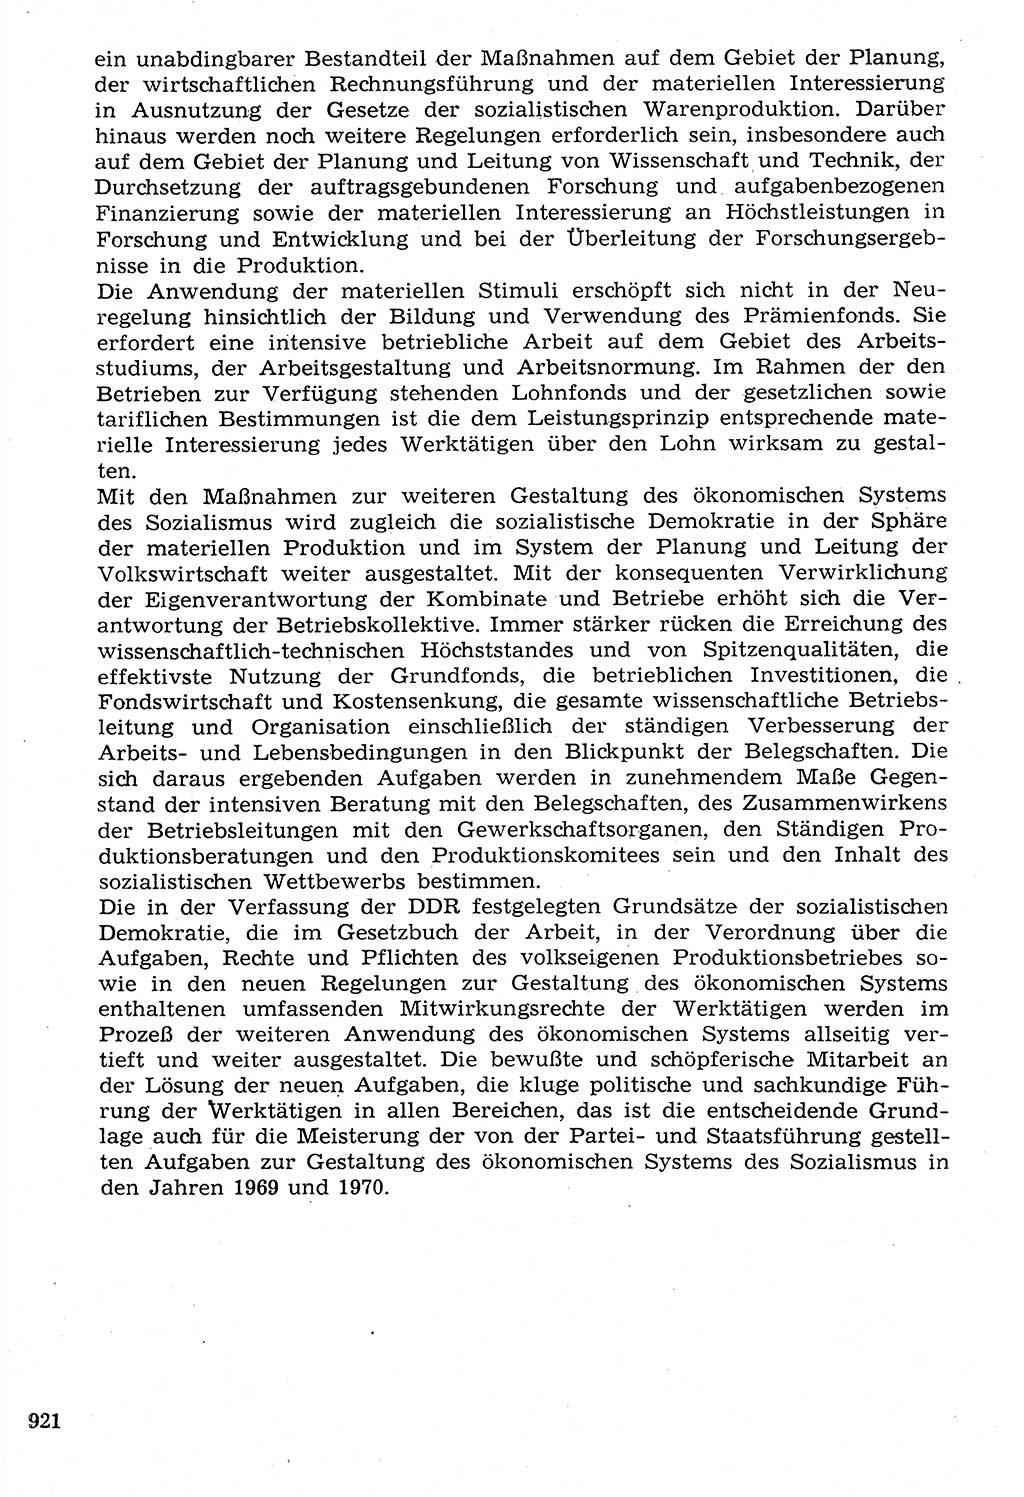 Staat und Recht (StuR), 17. Jahrgang [Deutsche Demokratische Republik (DDR)] 1968, Seite 921 (StuR DDR 1968, S. 921)